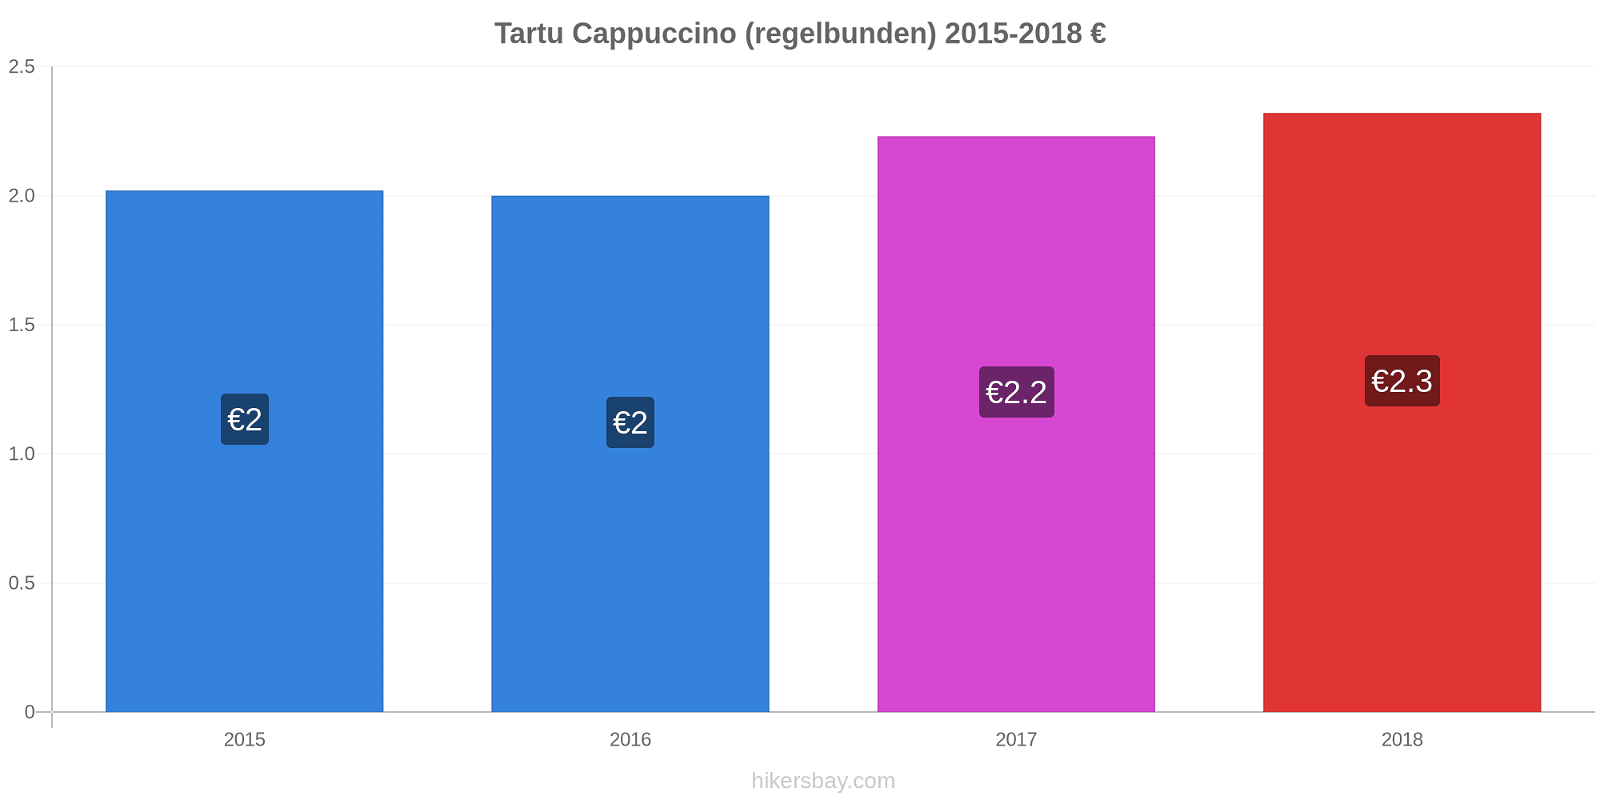 Tartu prisförändringar Cappuccino (regelbunden) hikersbay.com